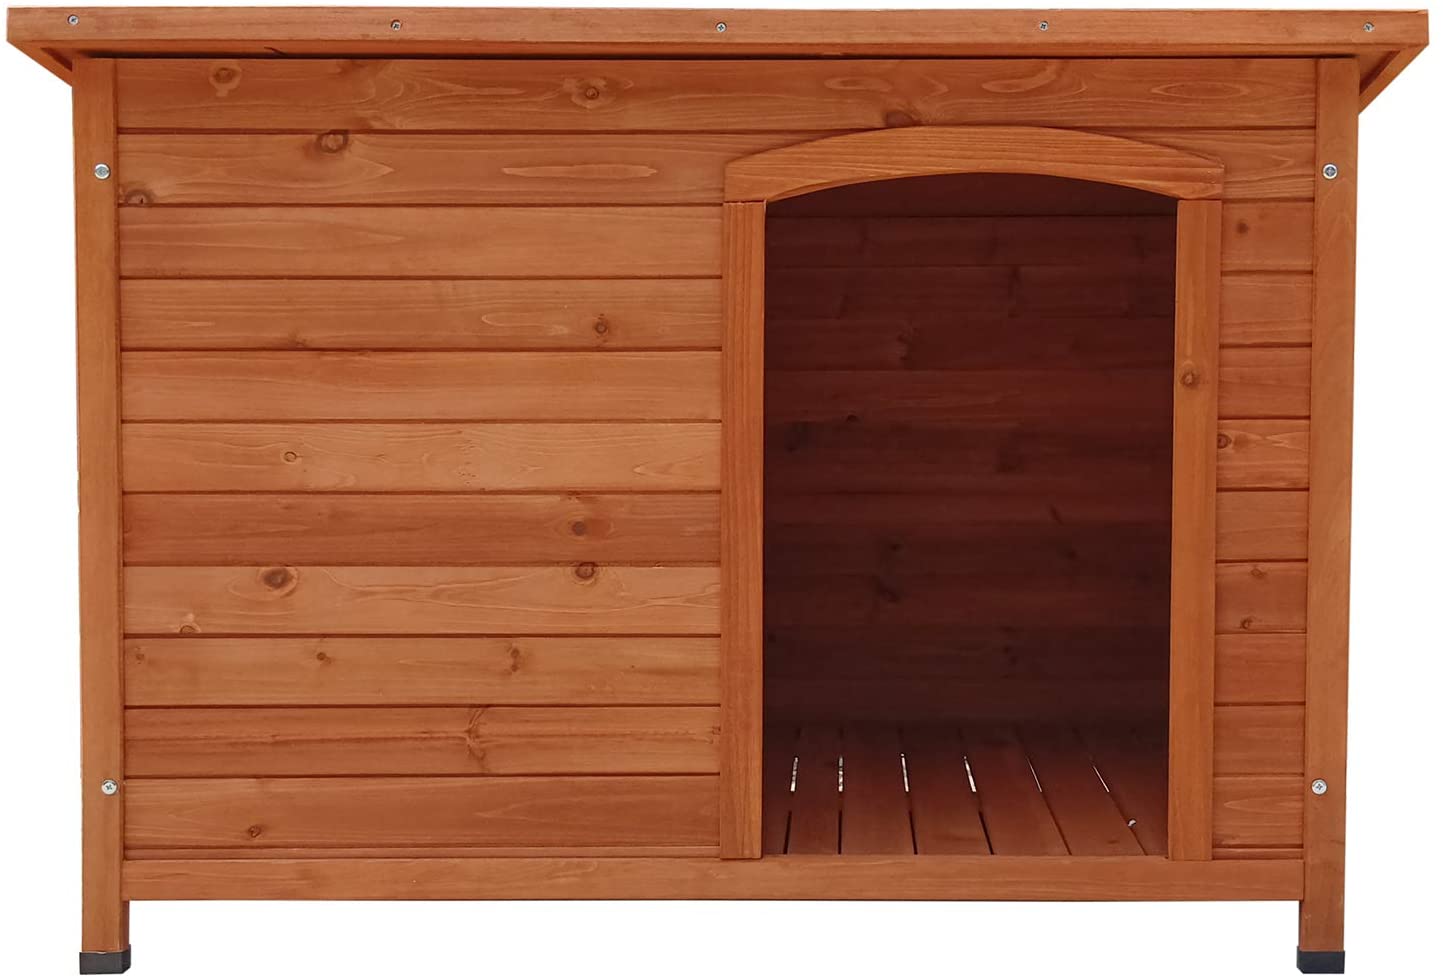  Gardiun KNH1250 - Caseta de Perro de madera Malik a 1 agua 104x66x70 cm 